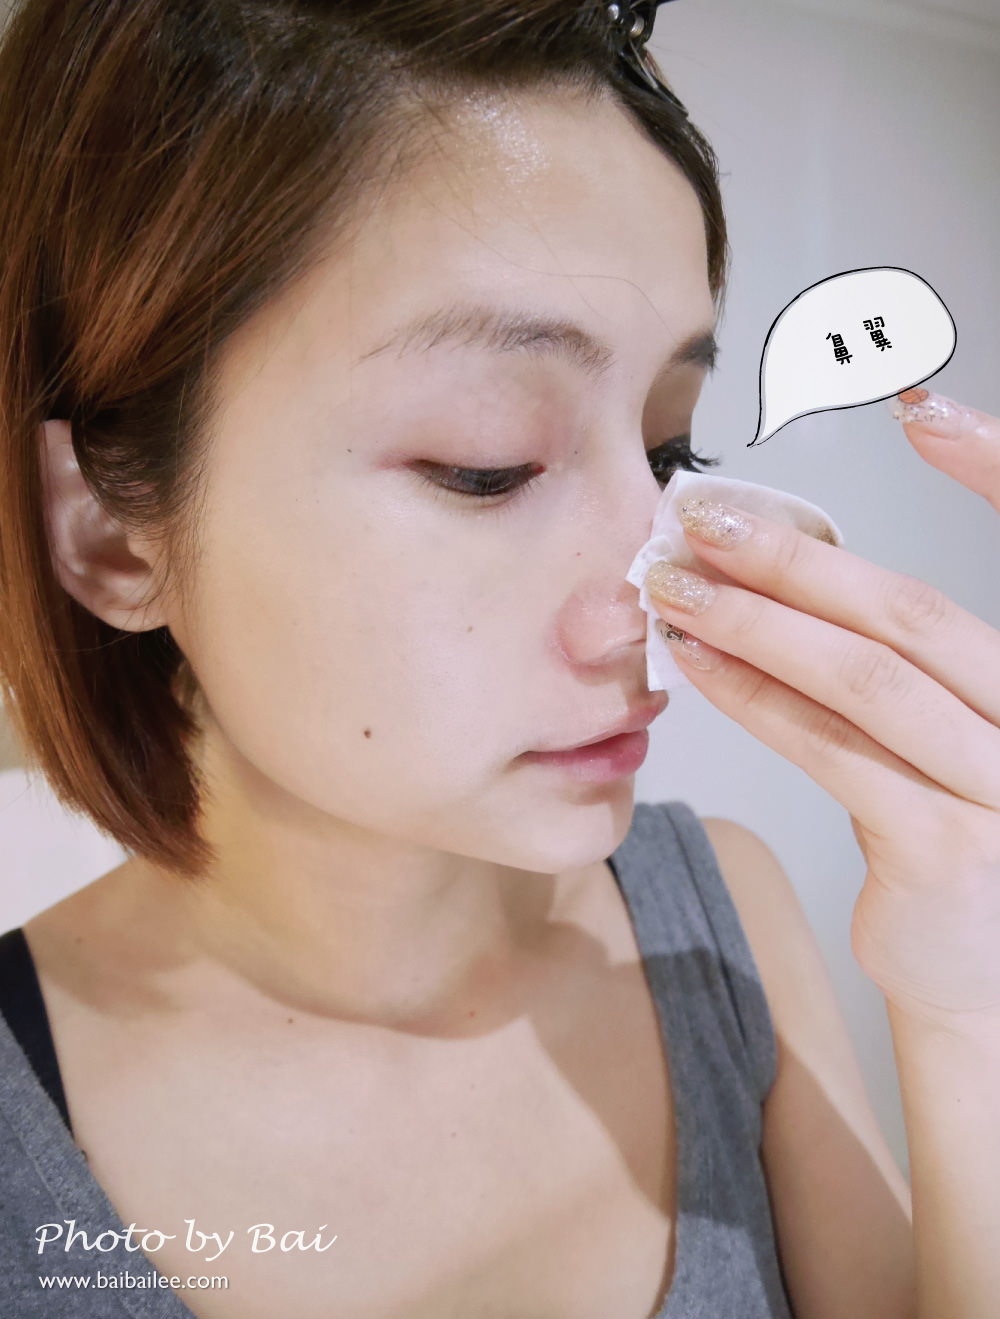 [卸妝] 聖克萊爾全效淨透卸妝水連防水眼妝都可以輕易卸除及接睫毛都能使用溫和卸妝水(附上實測影片)